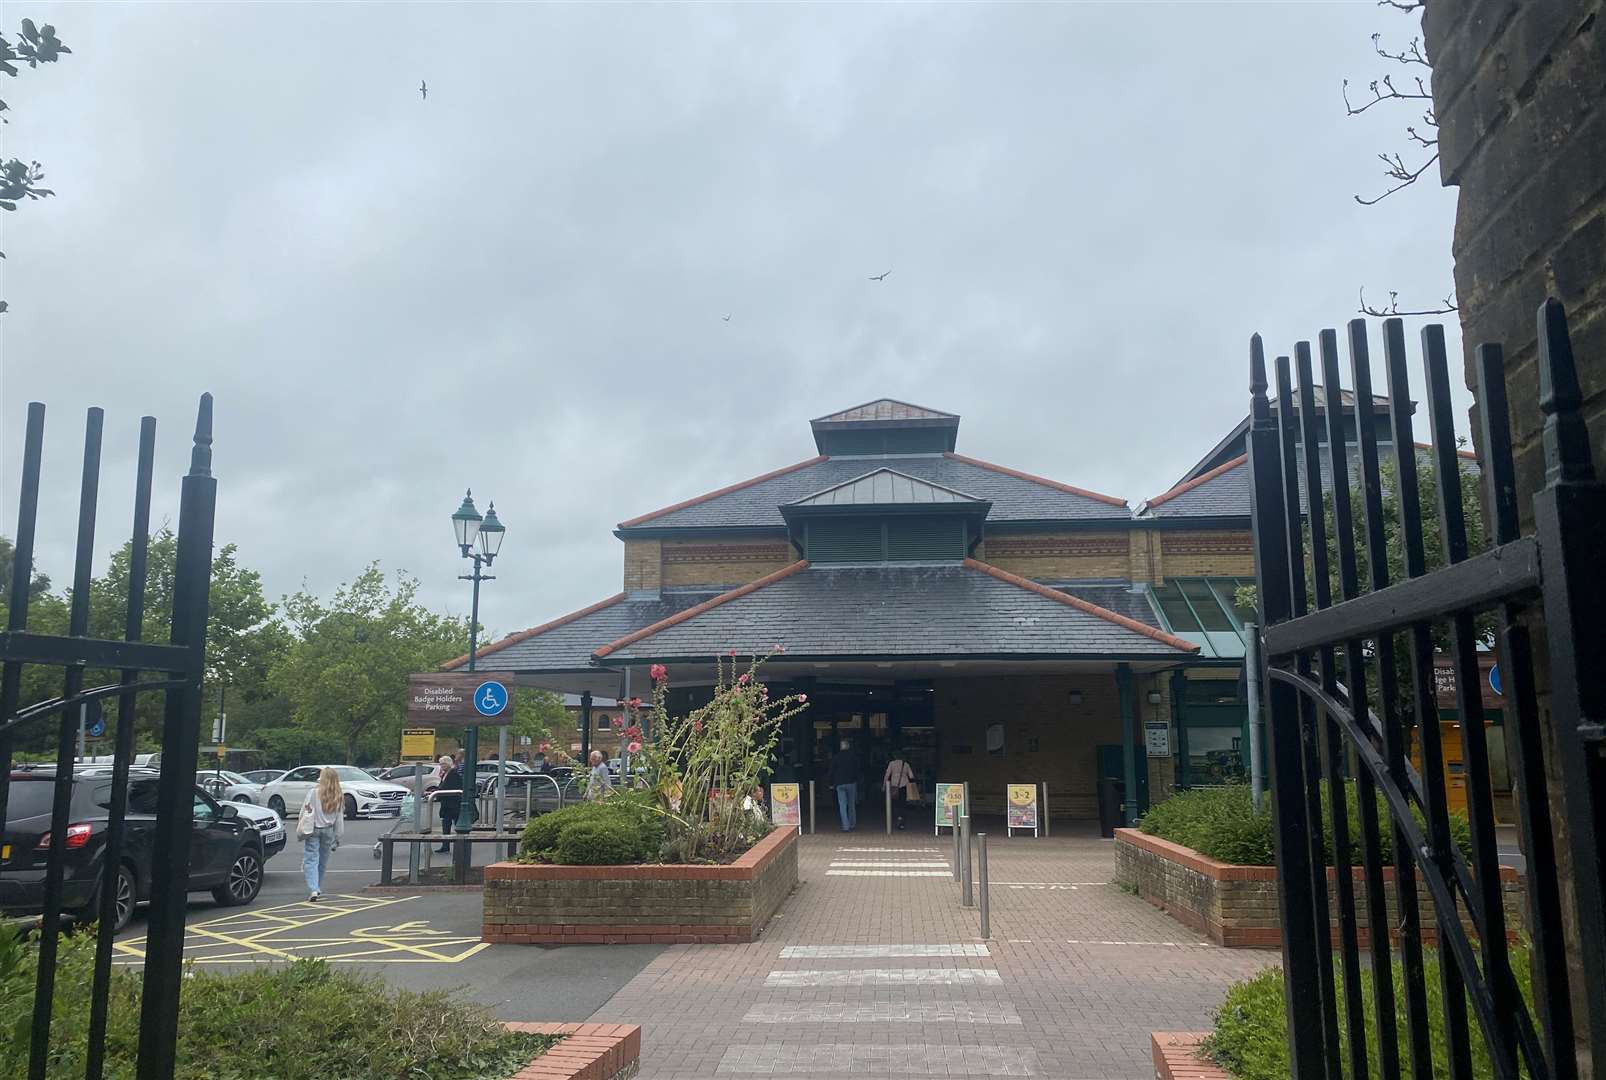 The Morrisons supermarket in Faversham shut in September